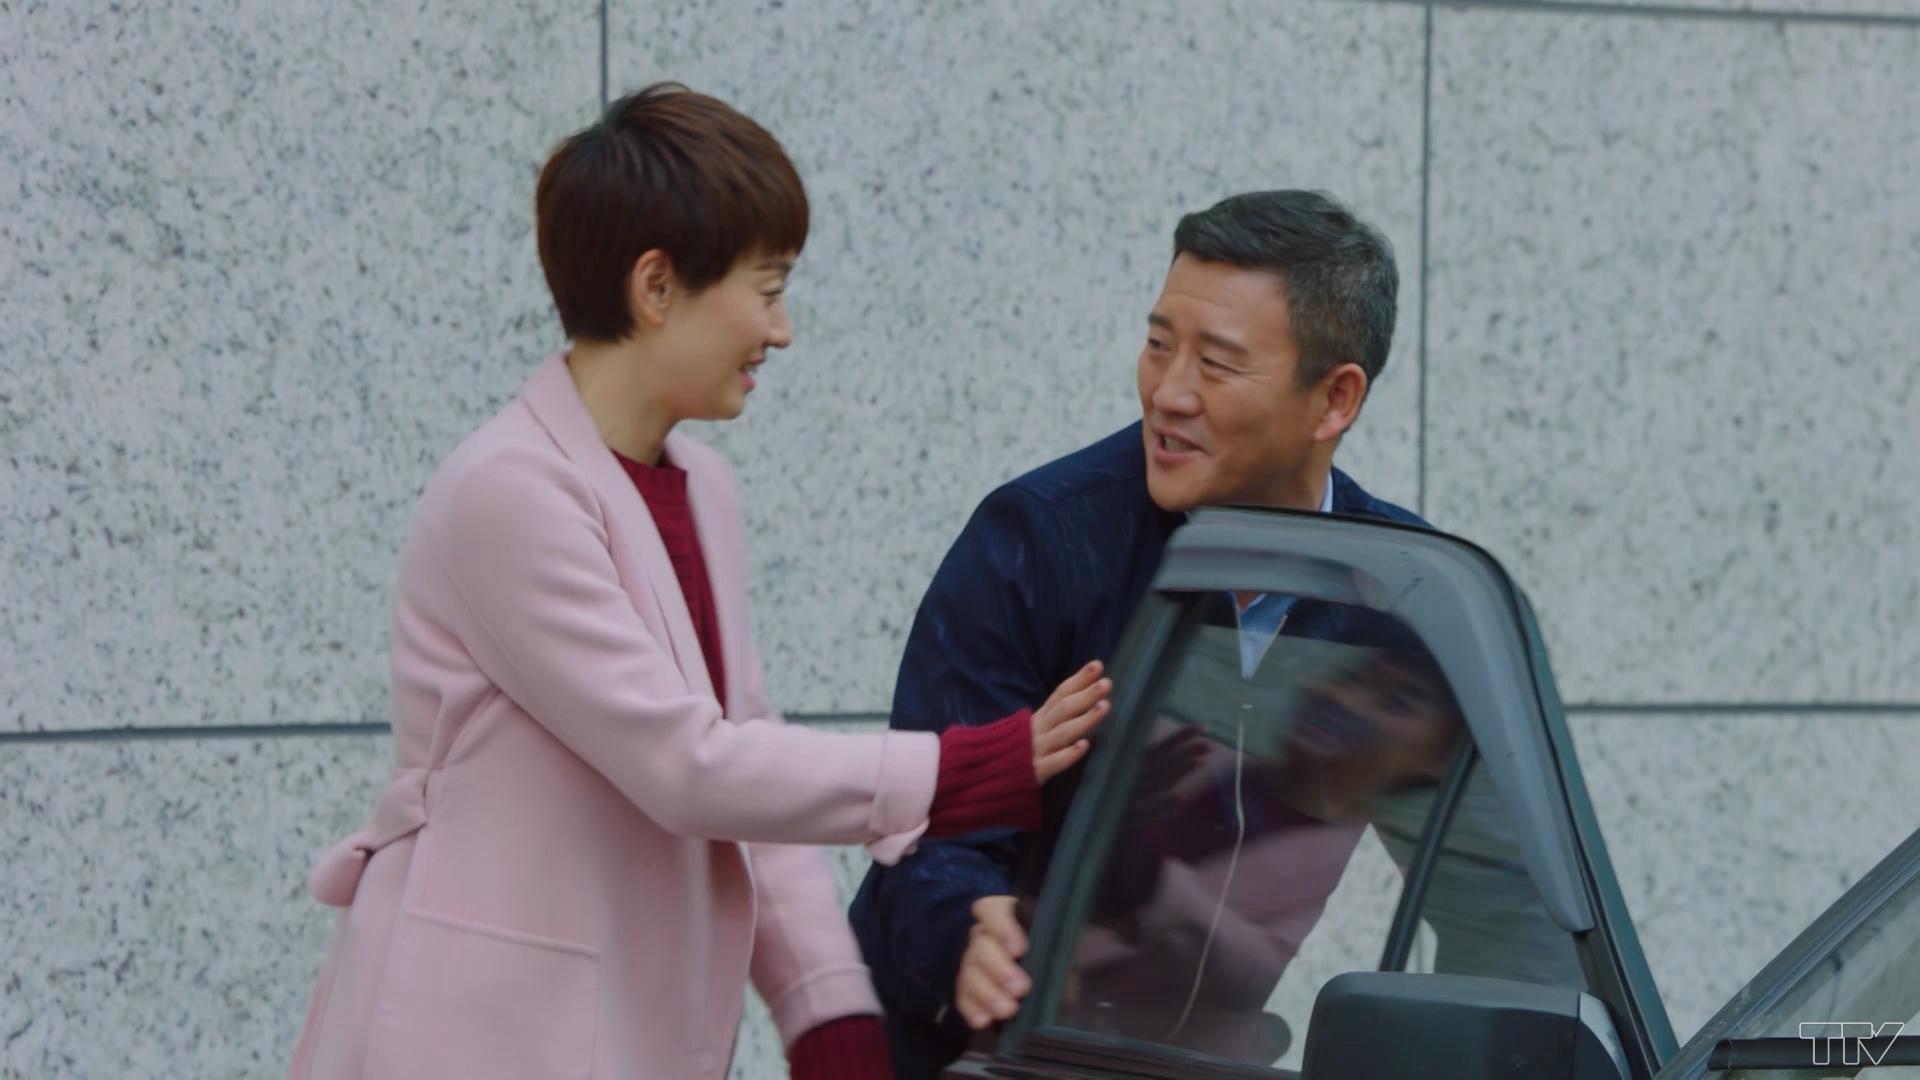 Lúc tan làm về, Tử Quân gặp anh Kim. Dù cô rất ngại phiền hà, nhưng trước sự nhiệt tình của anh nên cô đồng ý lên xe.